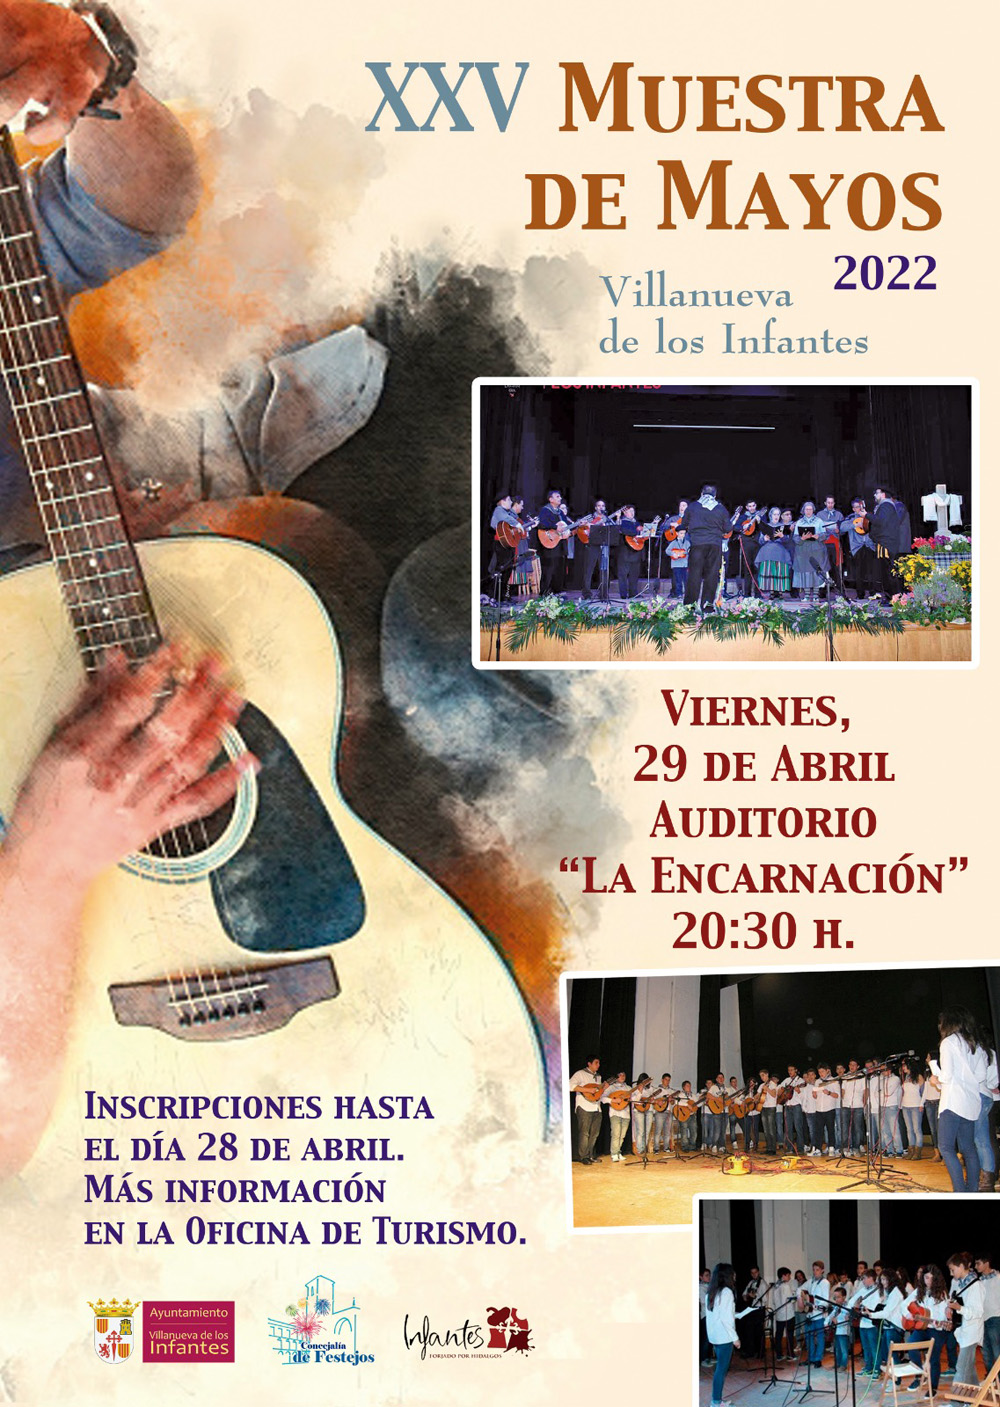 XXV Muestra de Mayos , Villanueva de los Infantes 2022